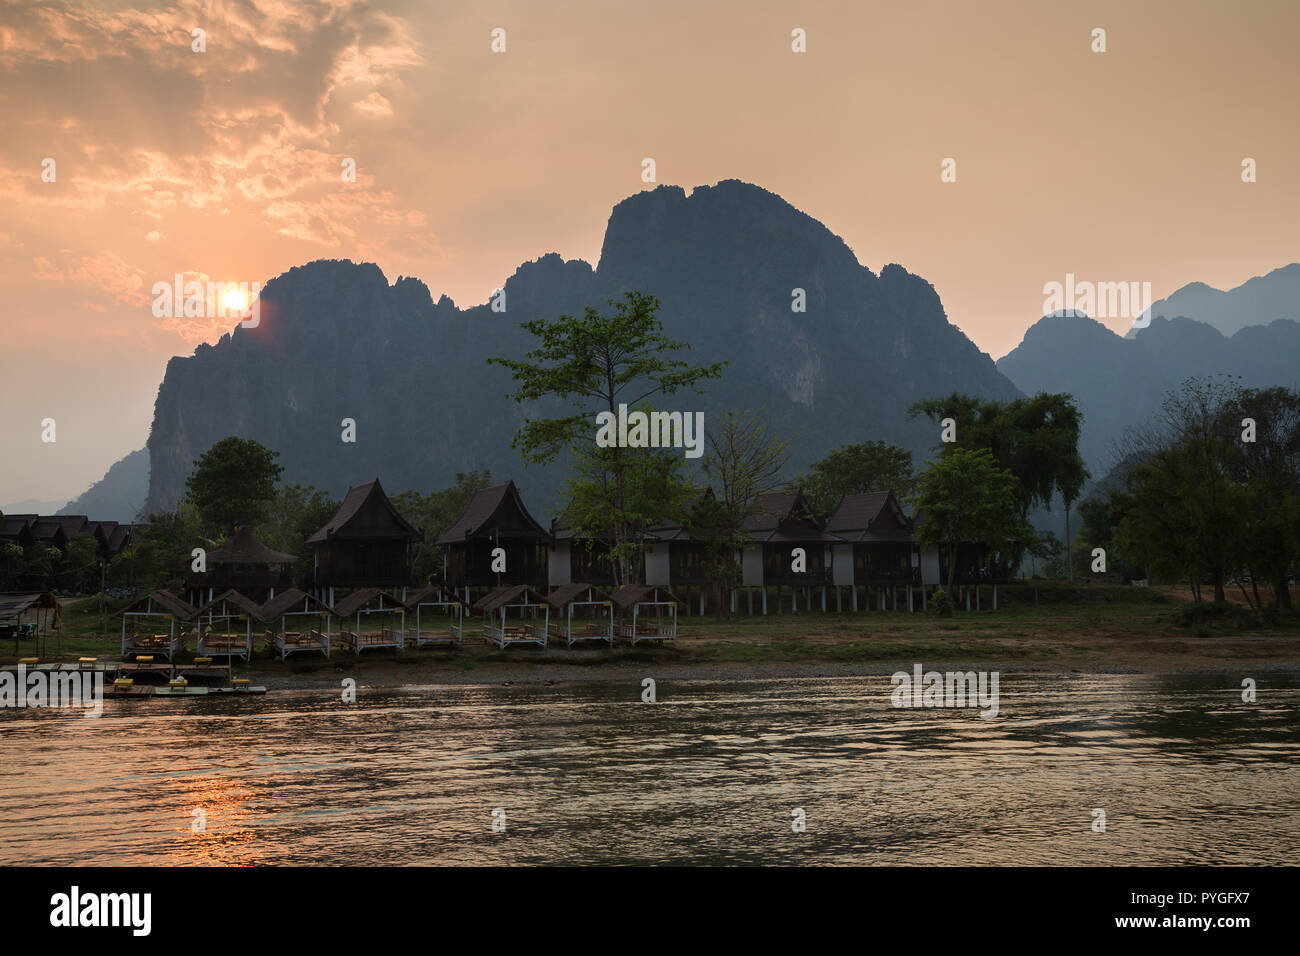 Leere Waterfront Restaurant und Bungalows durch den Nam Song Fluss und die Silhouette von Kalkstein Berge in Vang Vieng, Laos, bei Sonnenuntergang. Stockfoto